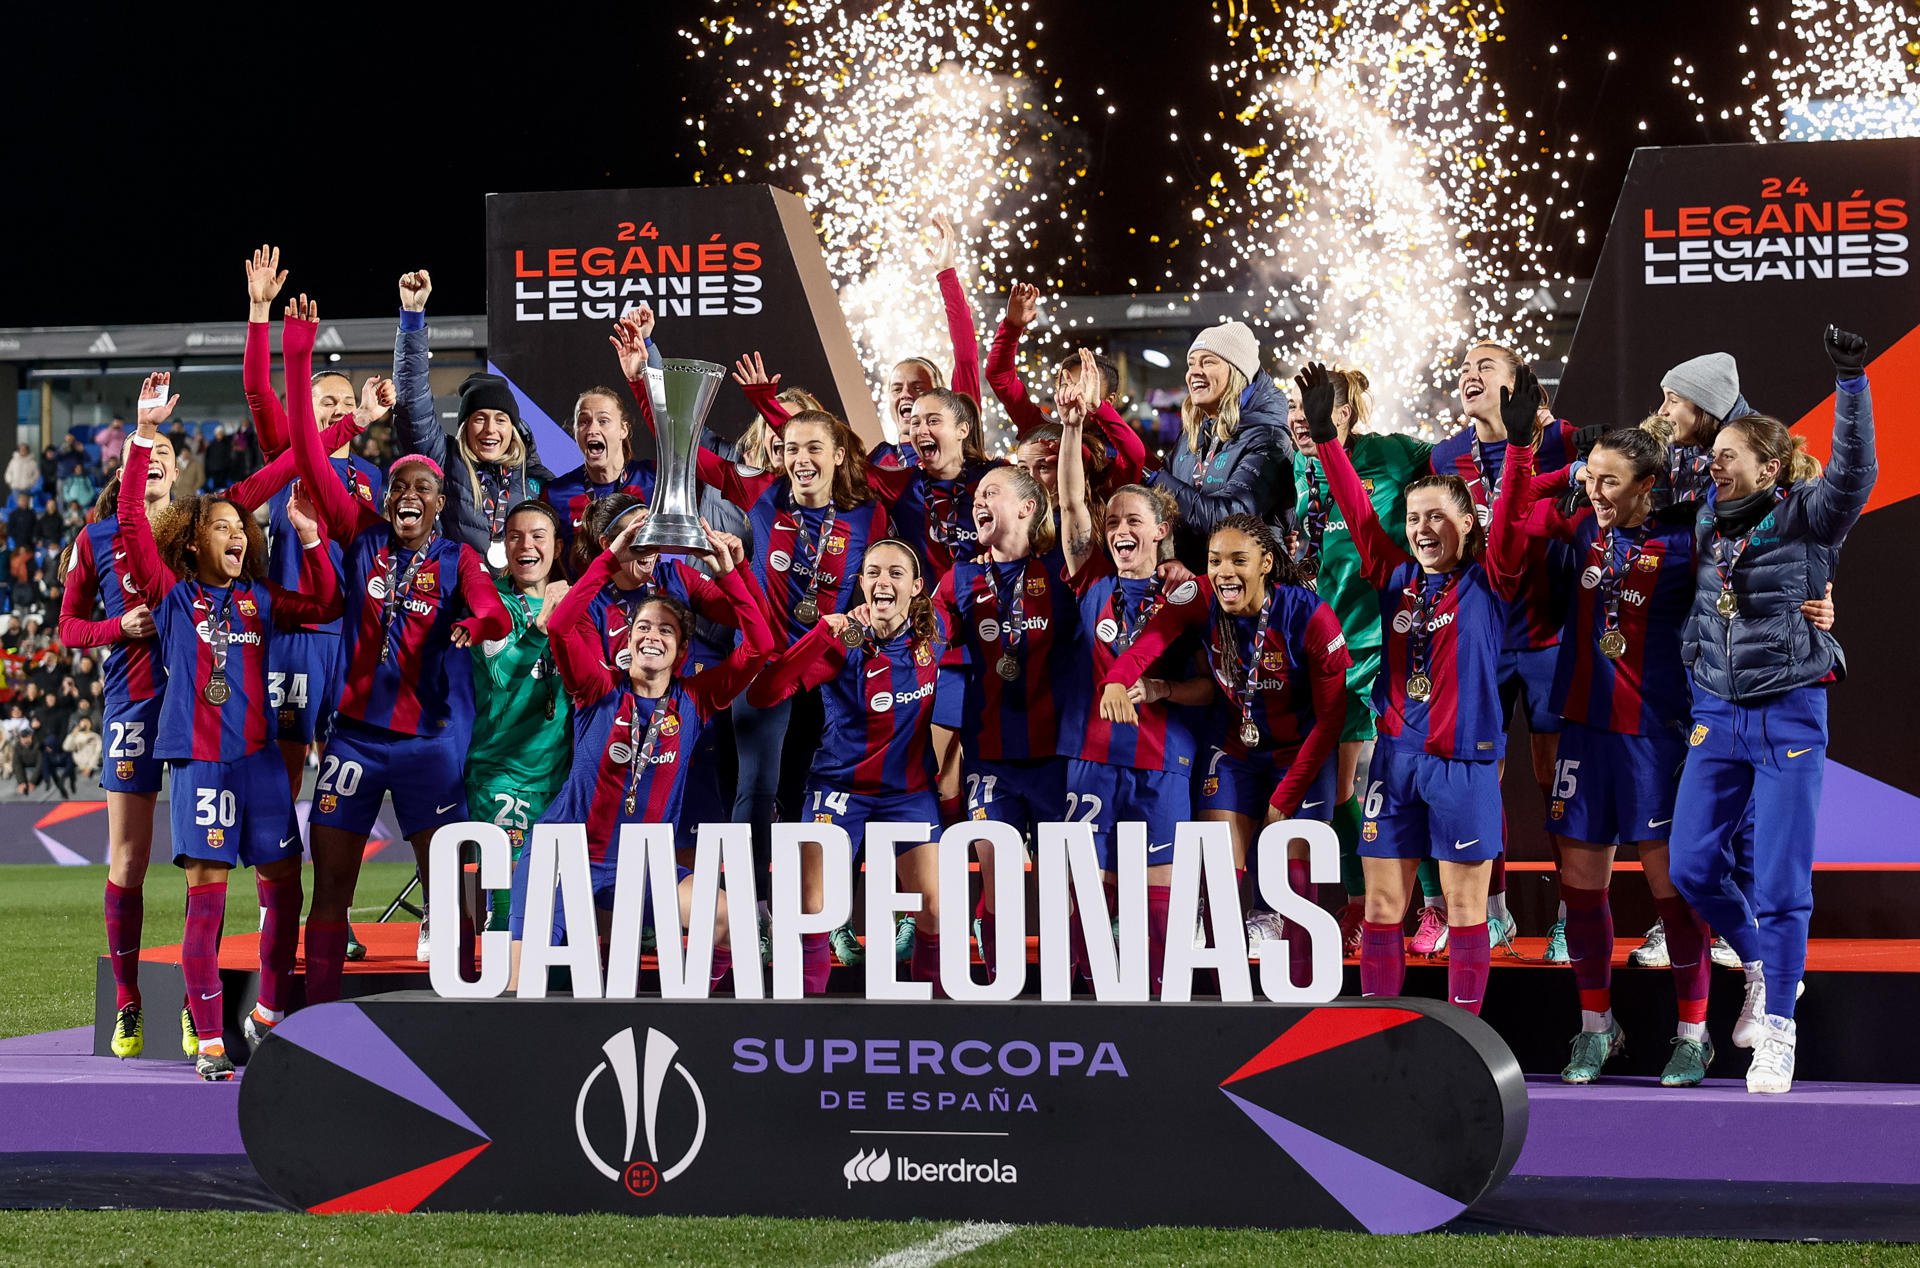 El FC Barcelona femení campió de la Supercopa i més: la volta al món en 15 fotos